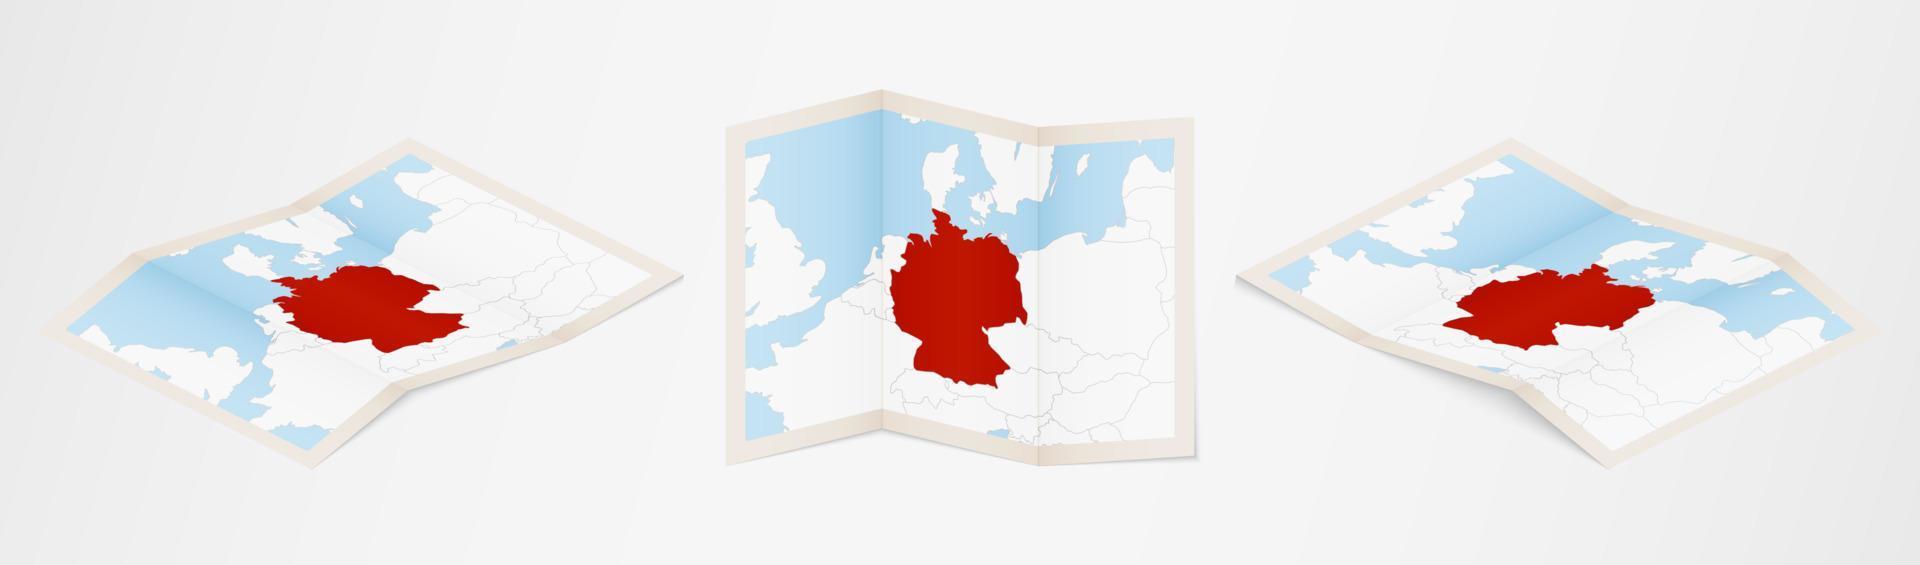 gevouwen kaart van Duitsland in drie verschillend versies. vector